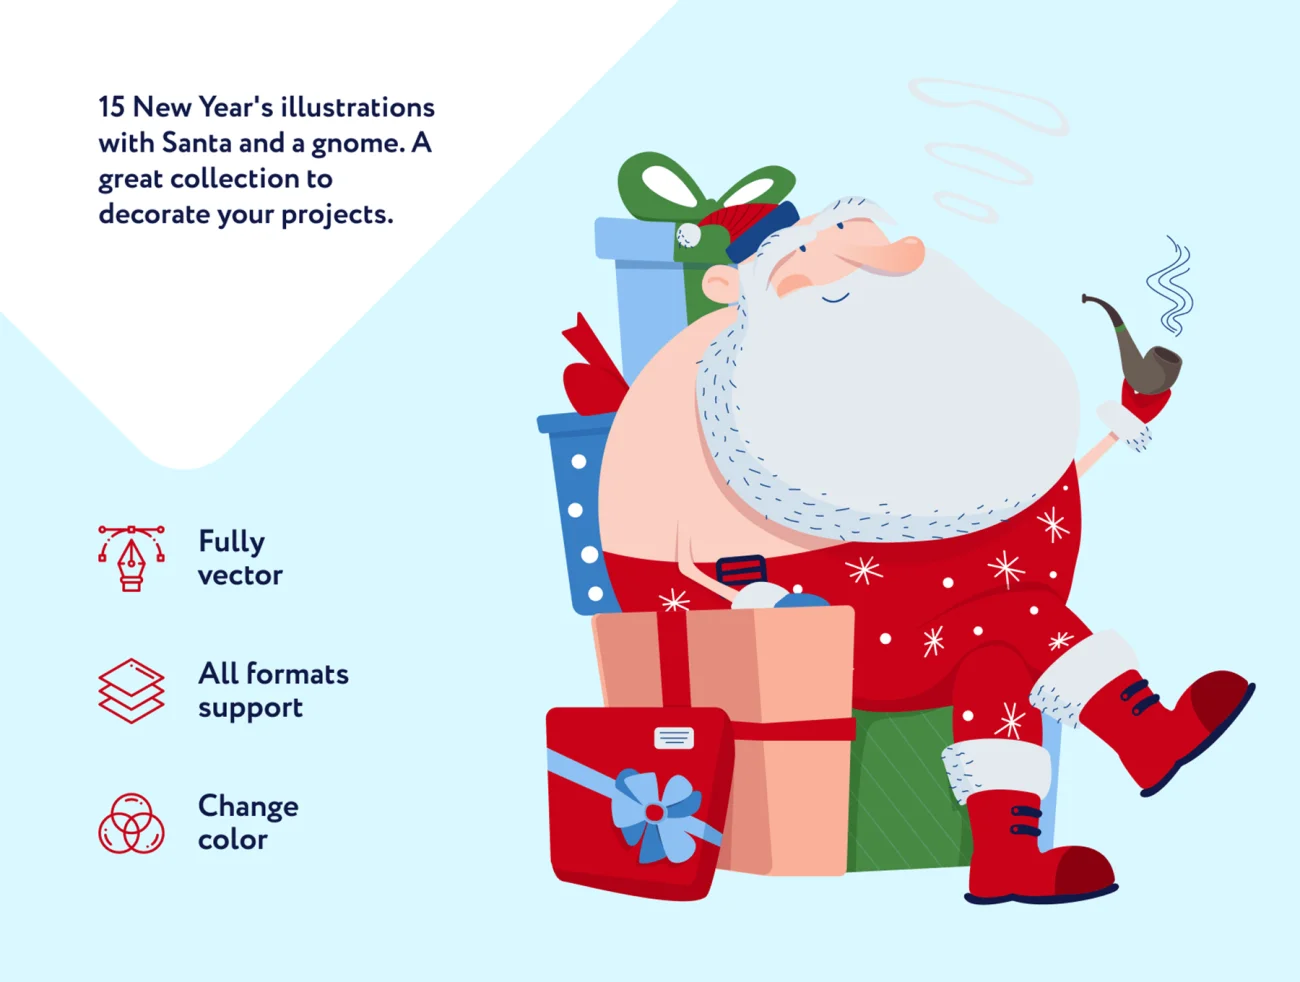 15幅圣诞节主题矢量插画 Krispy Illustrations-人物插画、场景插画、插画、线条手绘、趣味漫画-到位啦UI